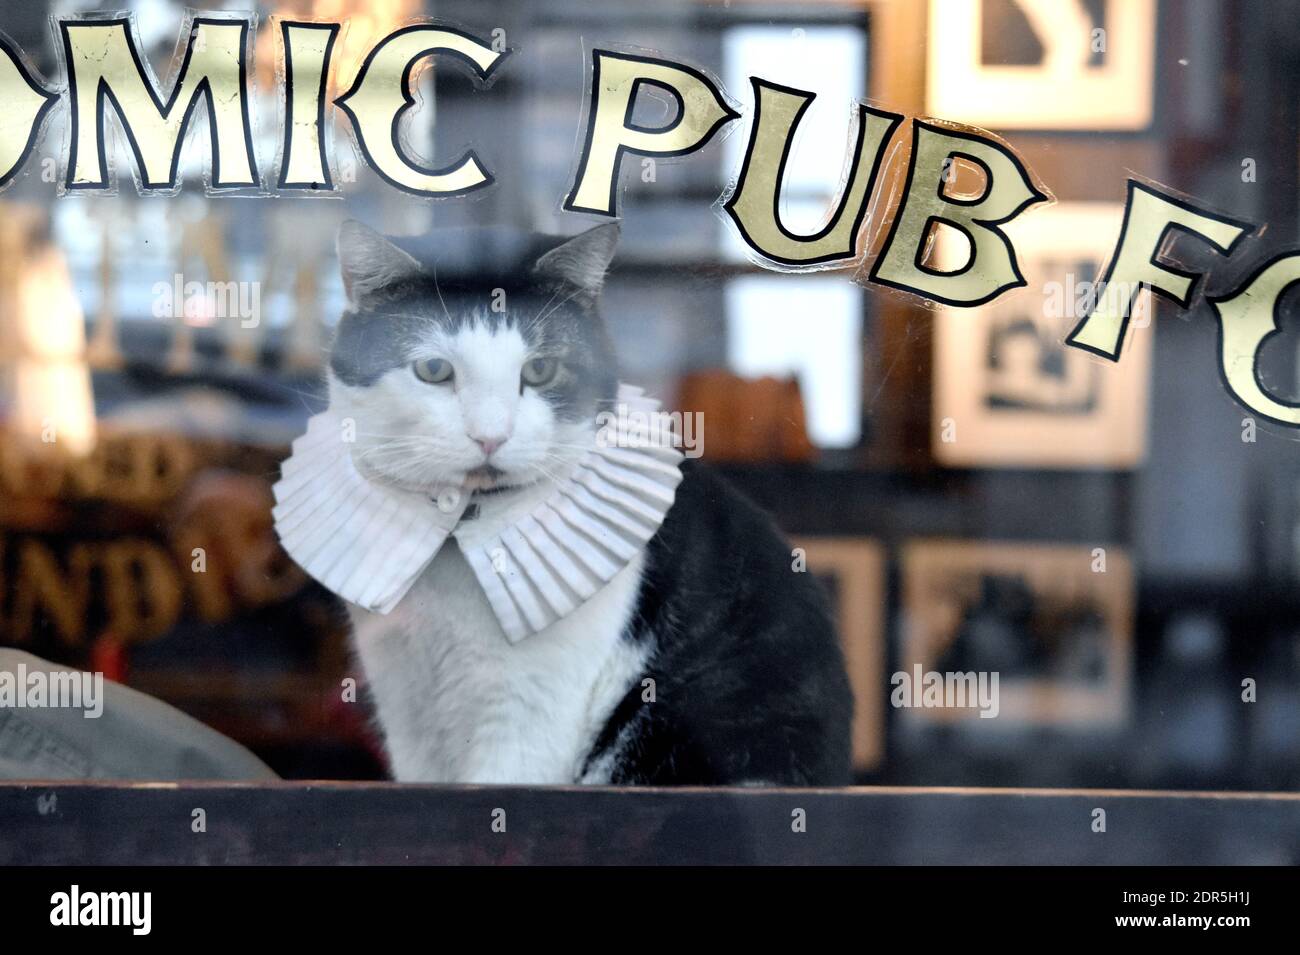 Katze mit weißem Kragen und Blick durch das Pub-Fenster in London  Stockfotografie - Alamy